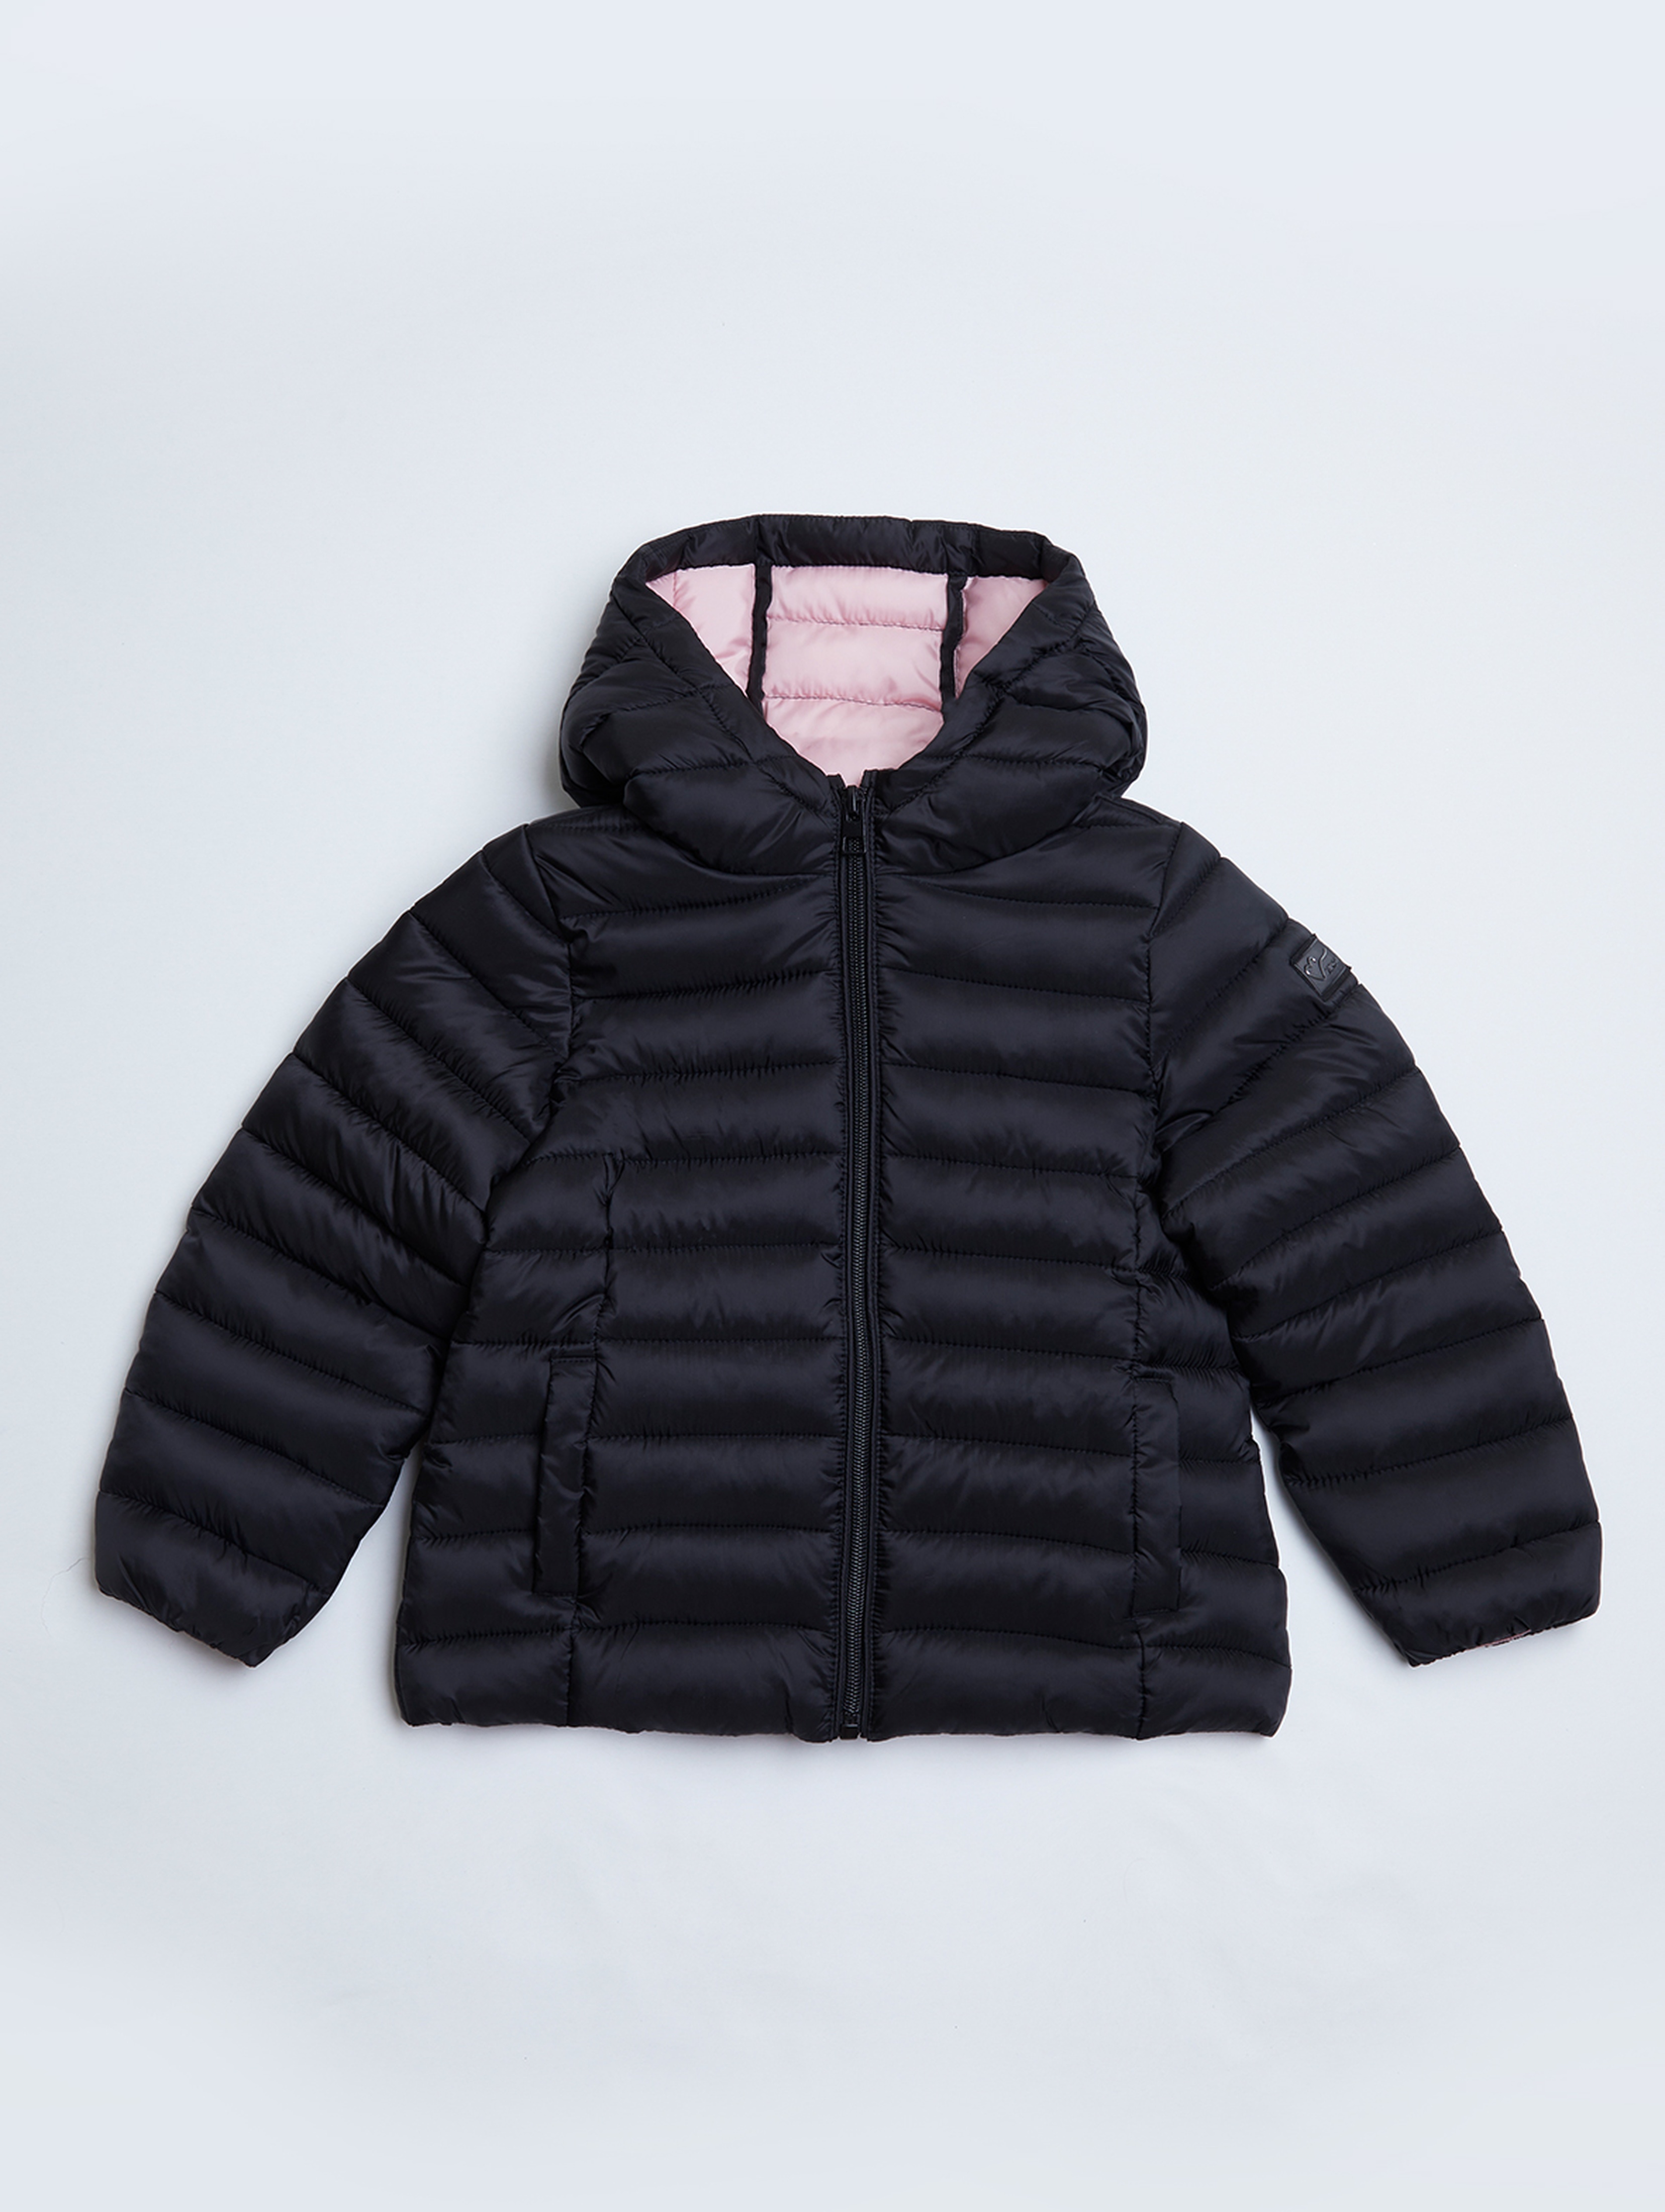 Czarna, lekka pikowana kurtka przejściowa z kapturem dla dziewczynki - Limited Edition